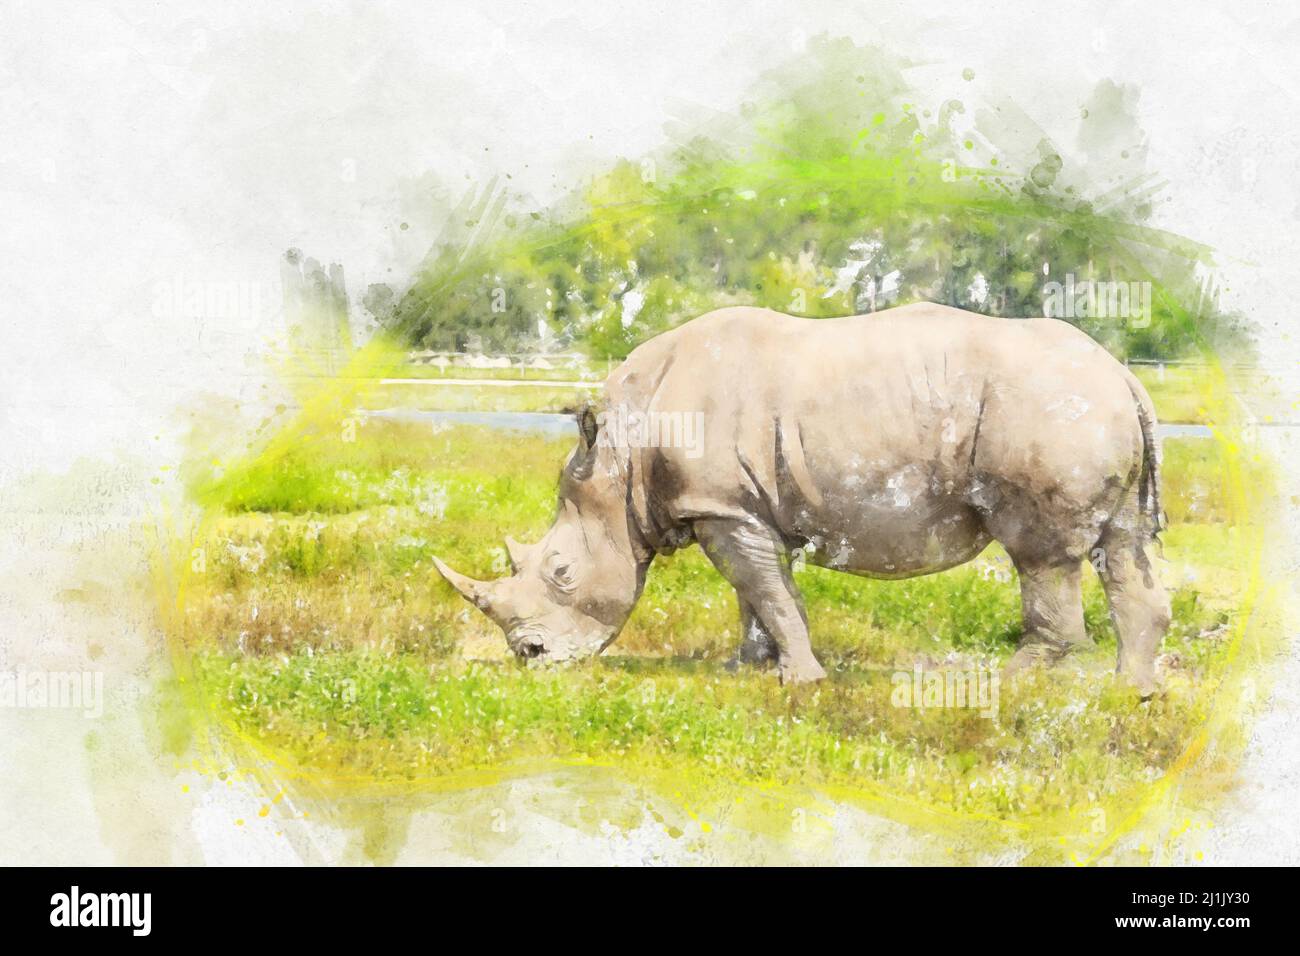 Illustration aquarelle du rhinocéros blanc sur fond blanc Banque D'Images